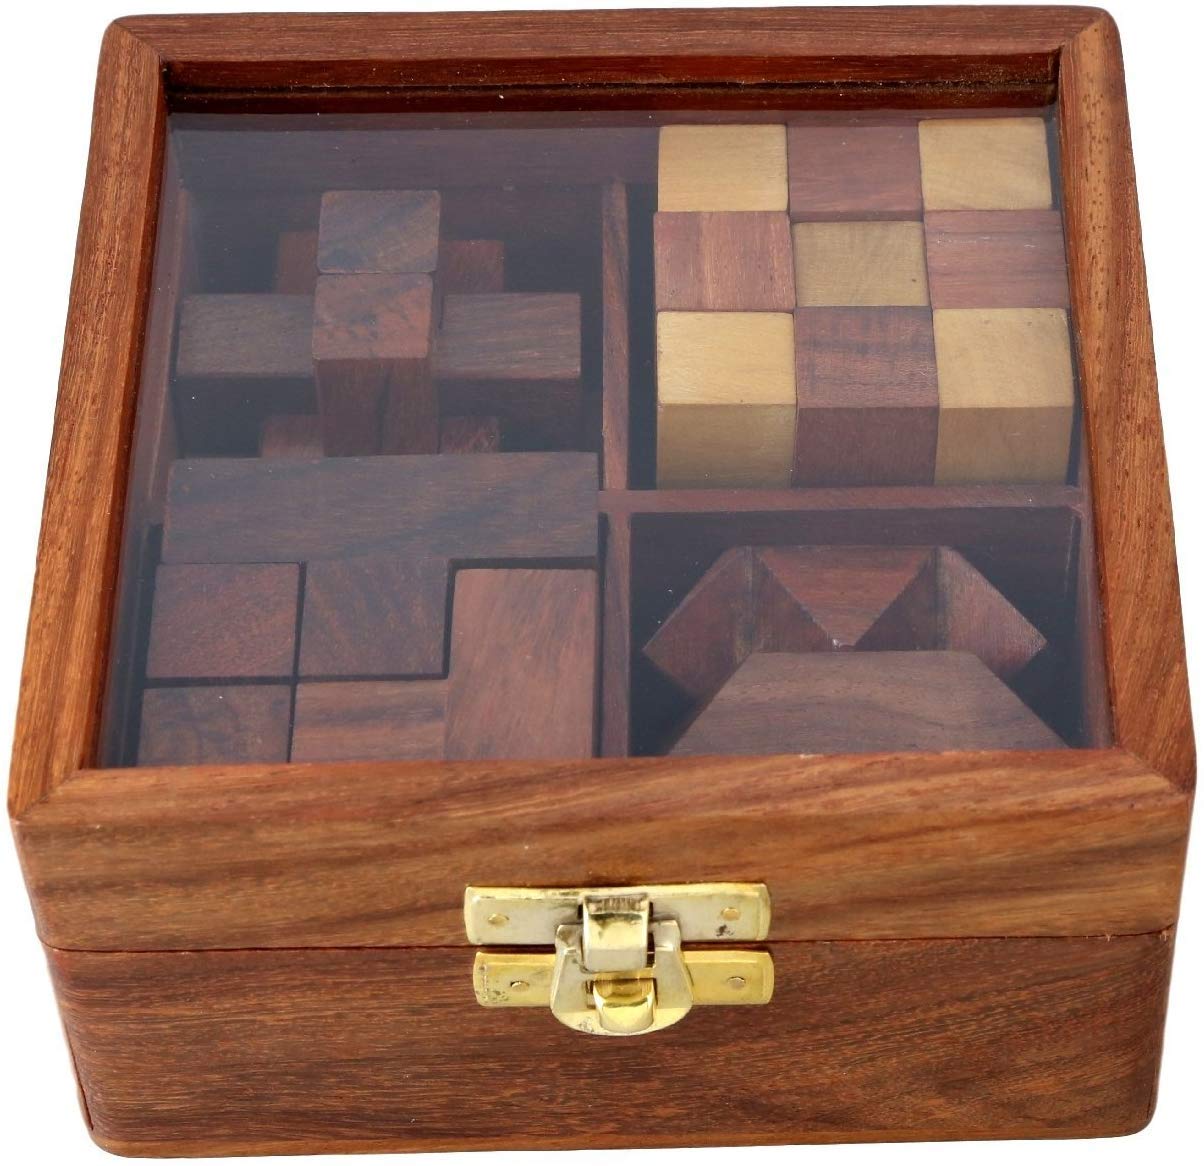 Wooden Puzzle Set